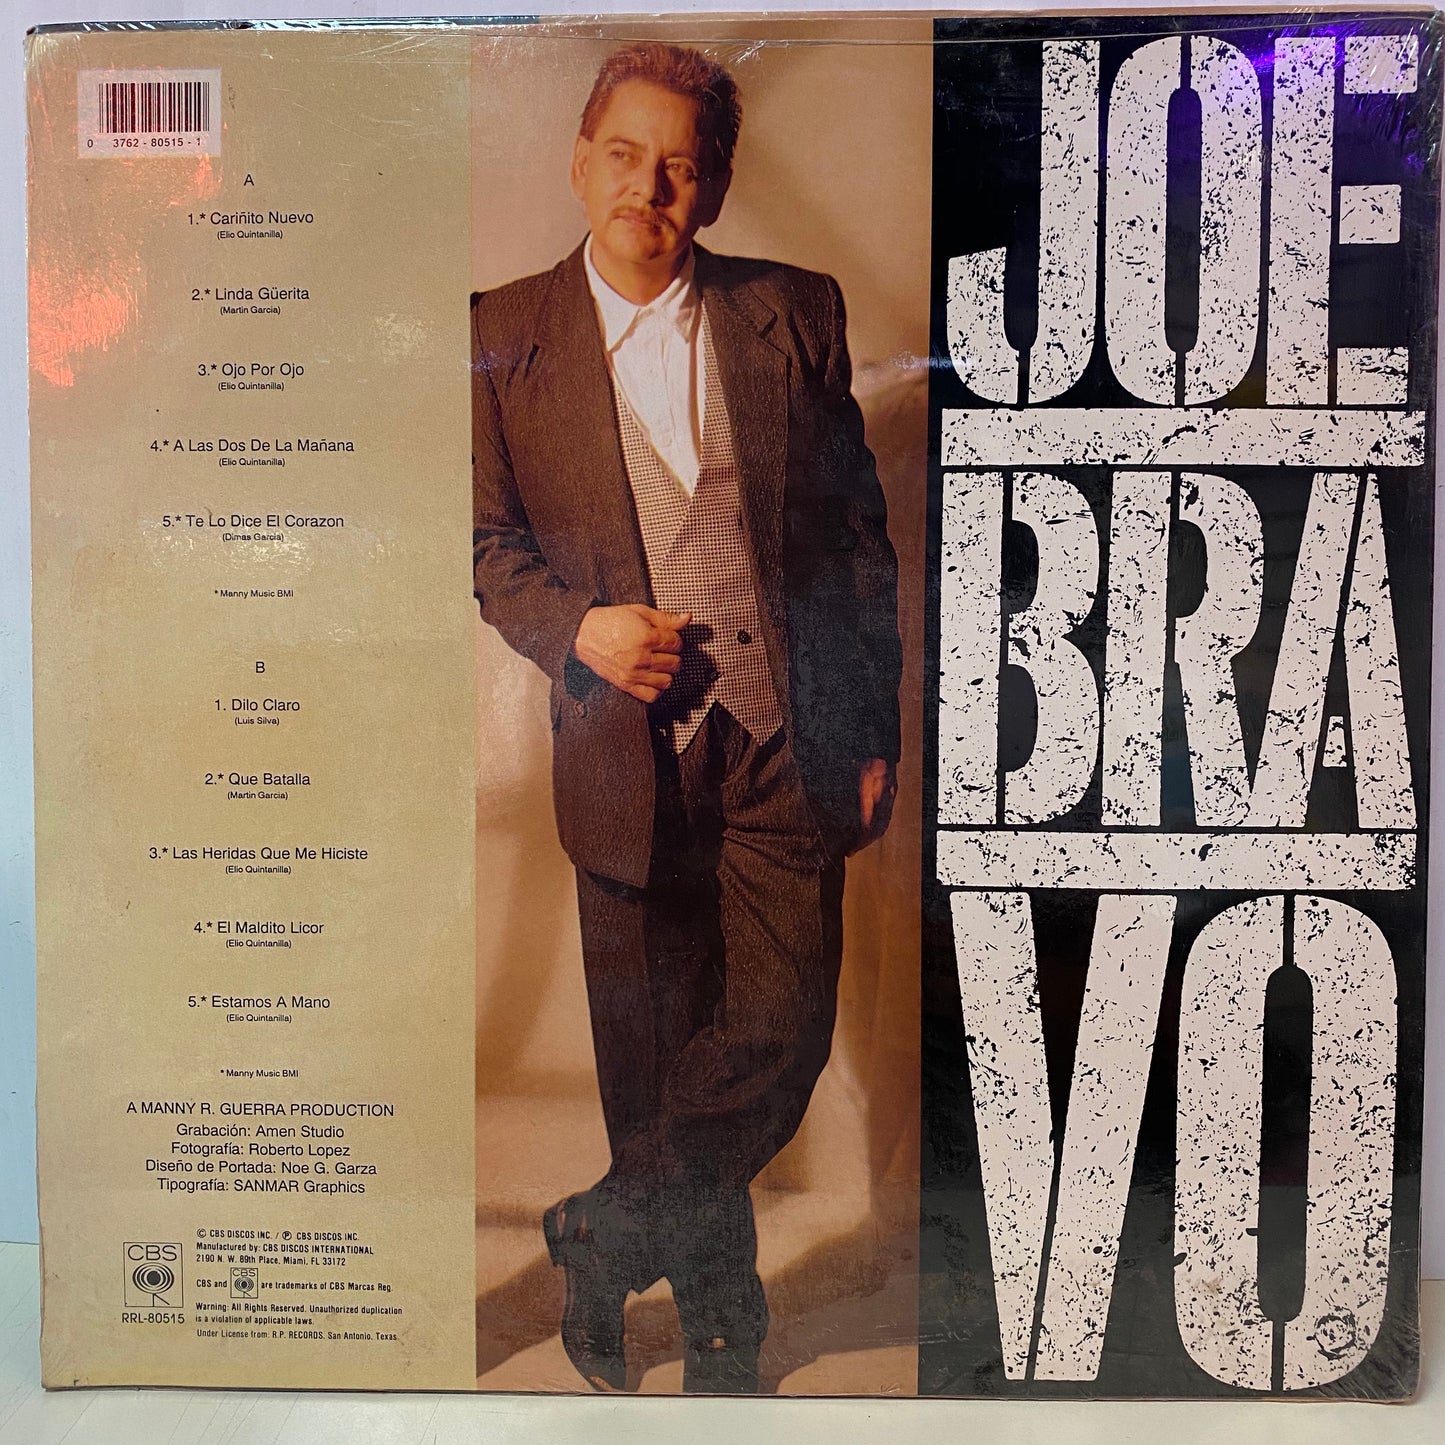 Joe Bravo - Joe Bravo (Vinyl)